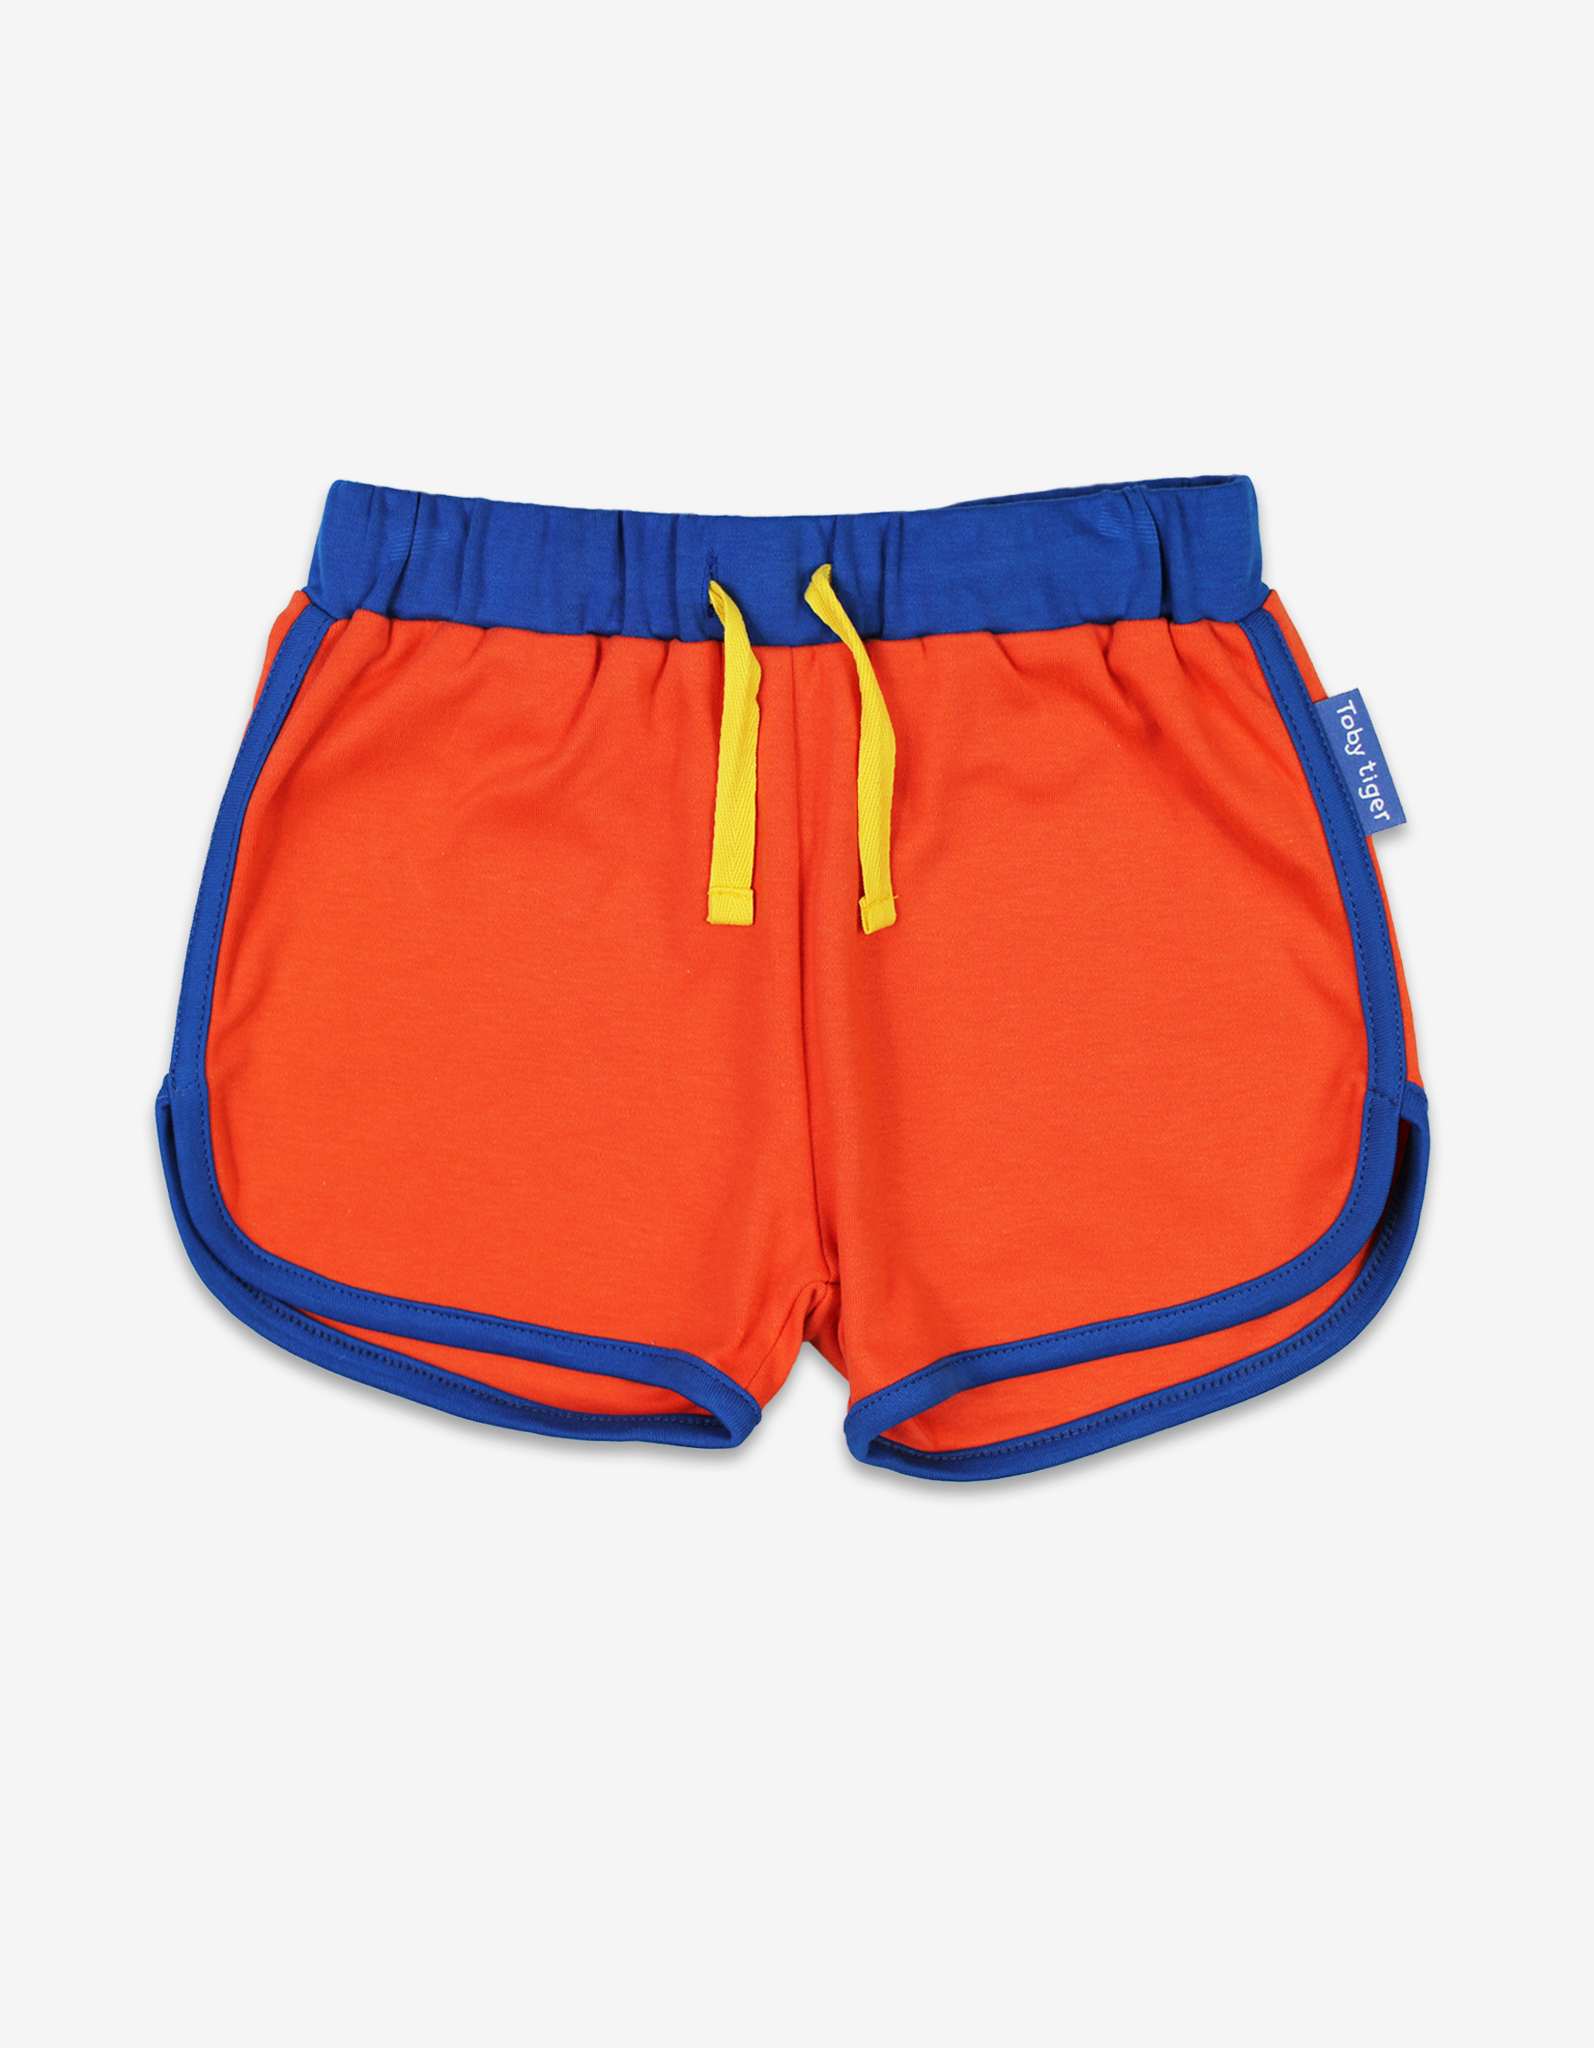 Organic Orange Running Shorts - 3